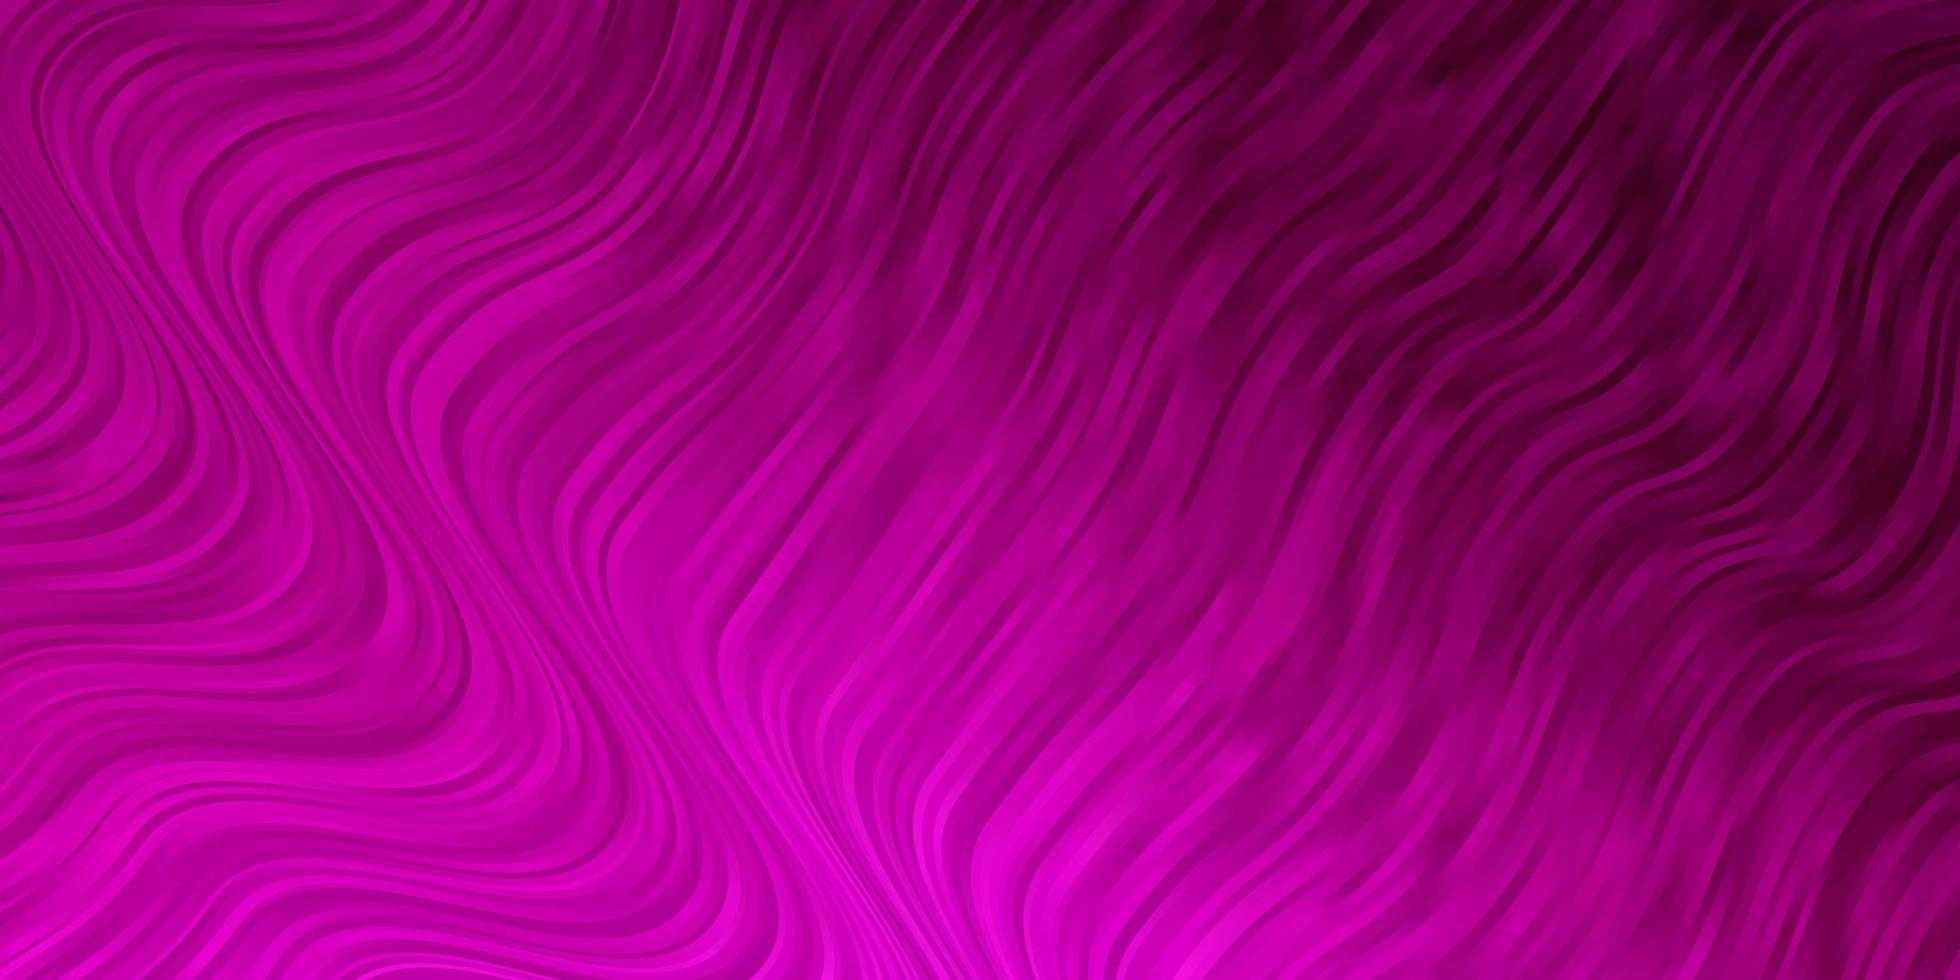 fundo vector rosa claro com linhas irônicas.